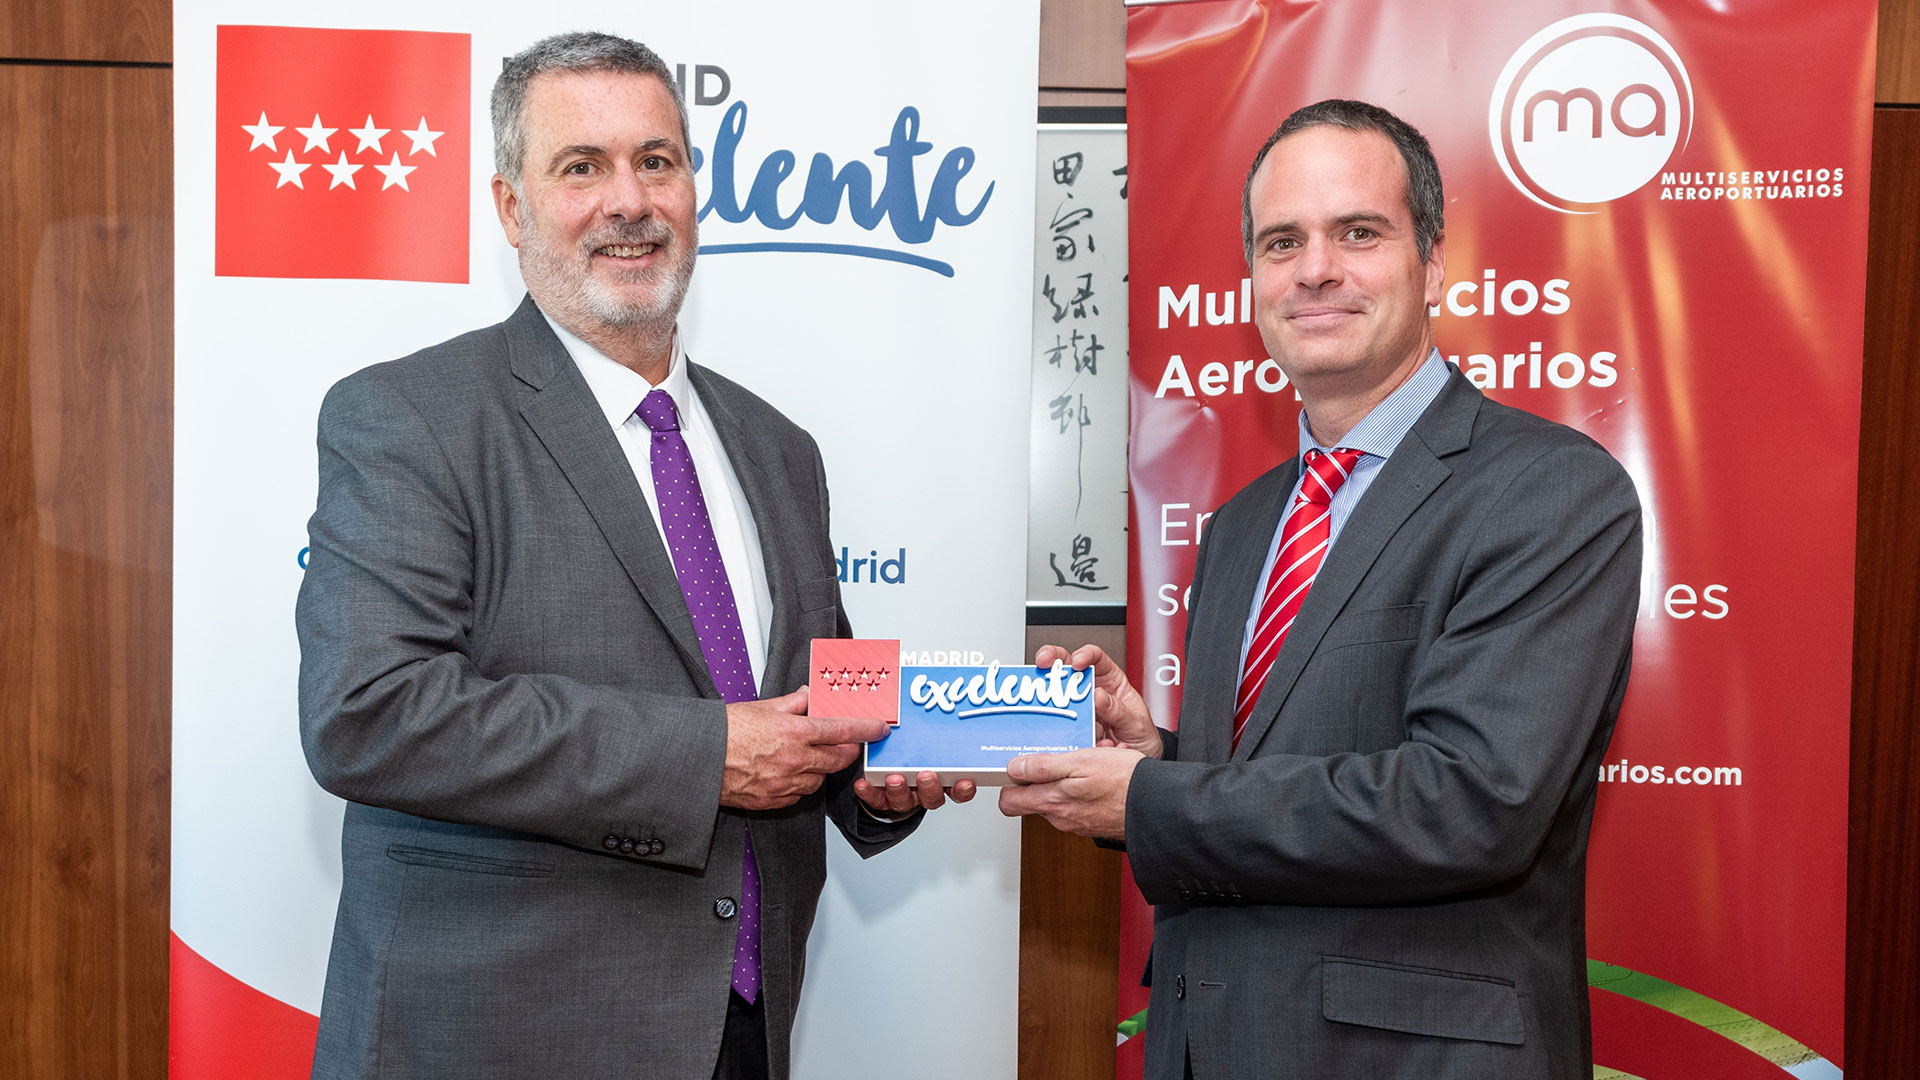 Madrid Excelente hace entrega de su sello a Multiservicios Aeroportuarios por su compromiso con los fundamentos de excelencia empresarial   